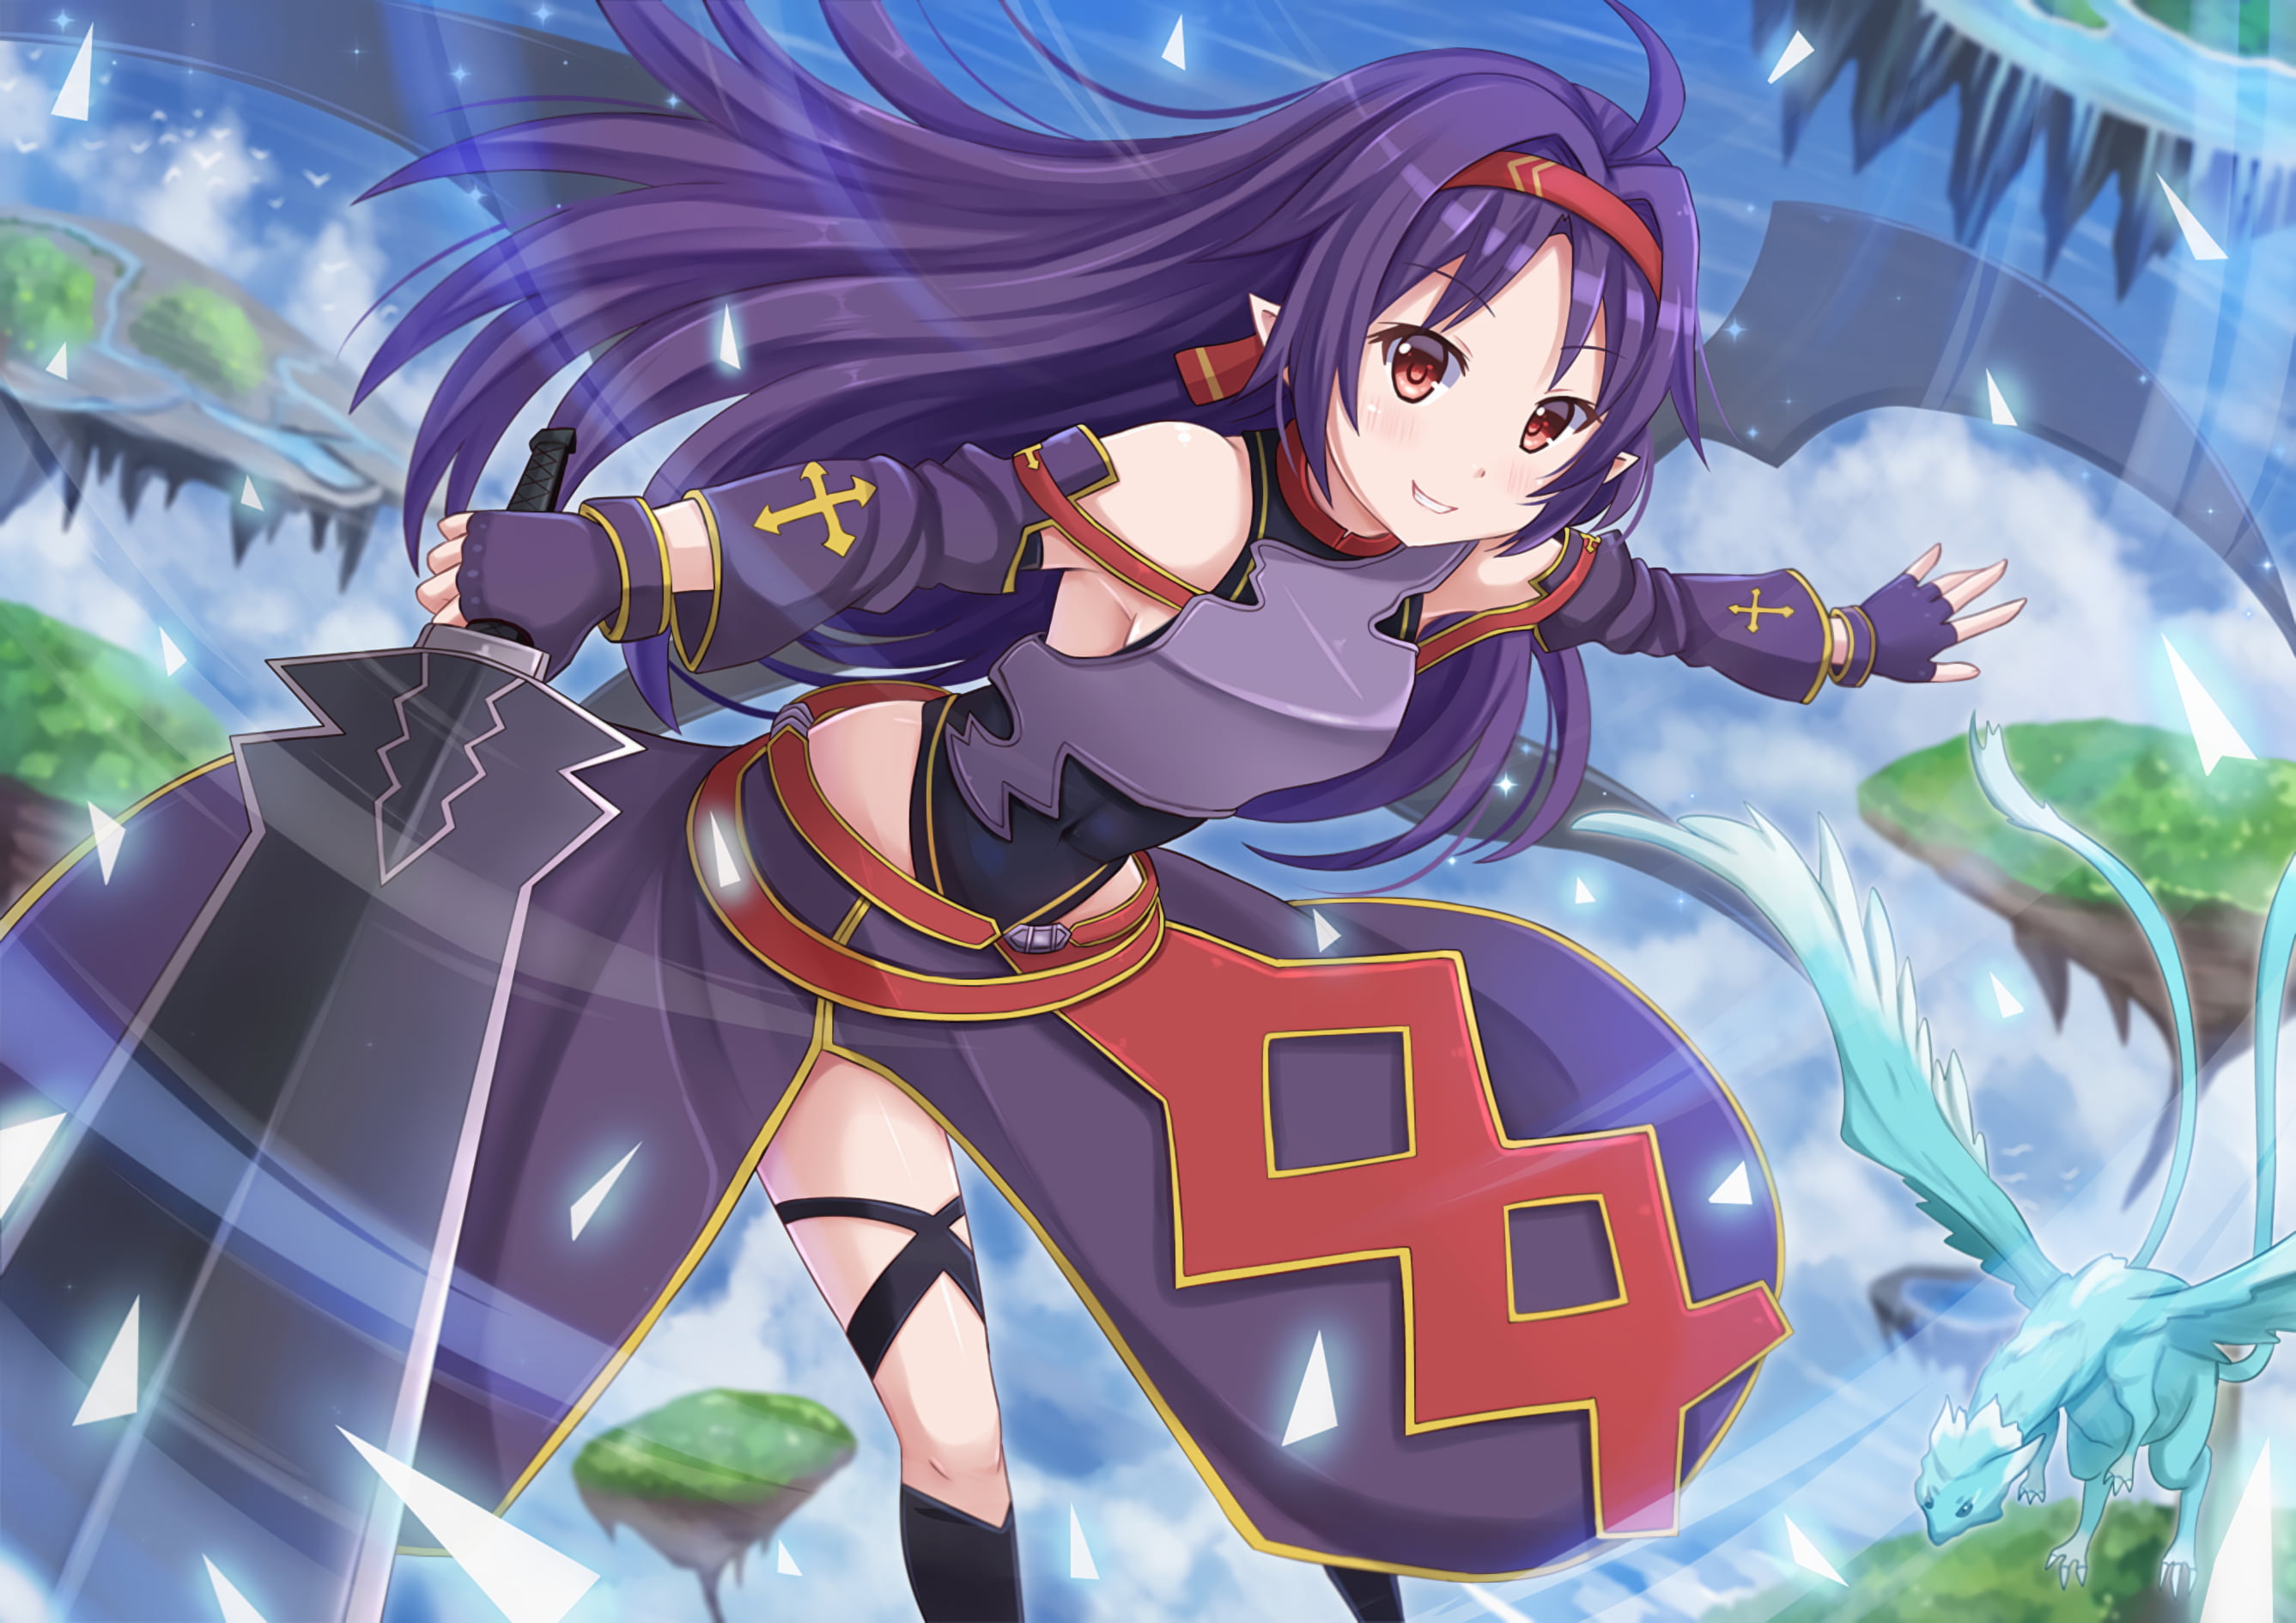 Sword Art Online Female Character Illustration Hd Wallpaper Wallpaper Flare